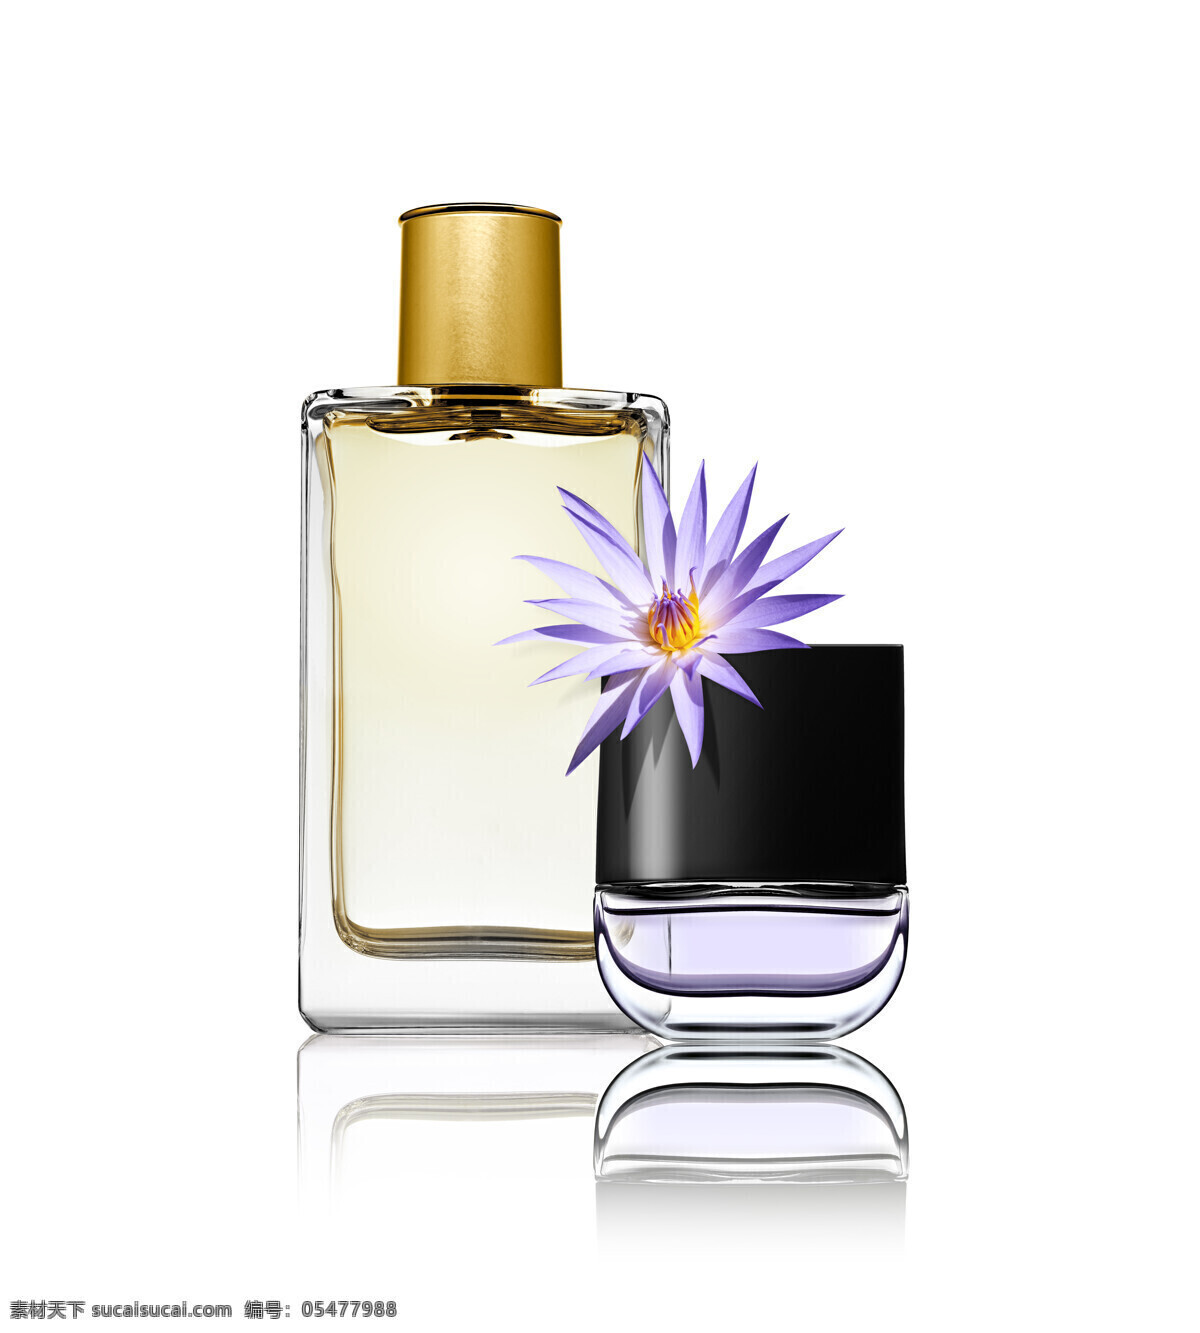 香水 花朵 perfume 香水瓶 香水广告 高清图片 生活用品 生活百科